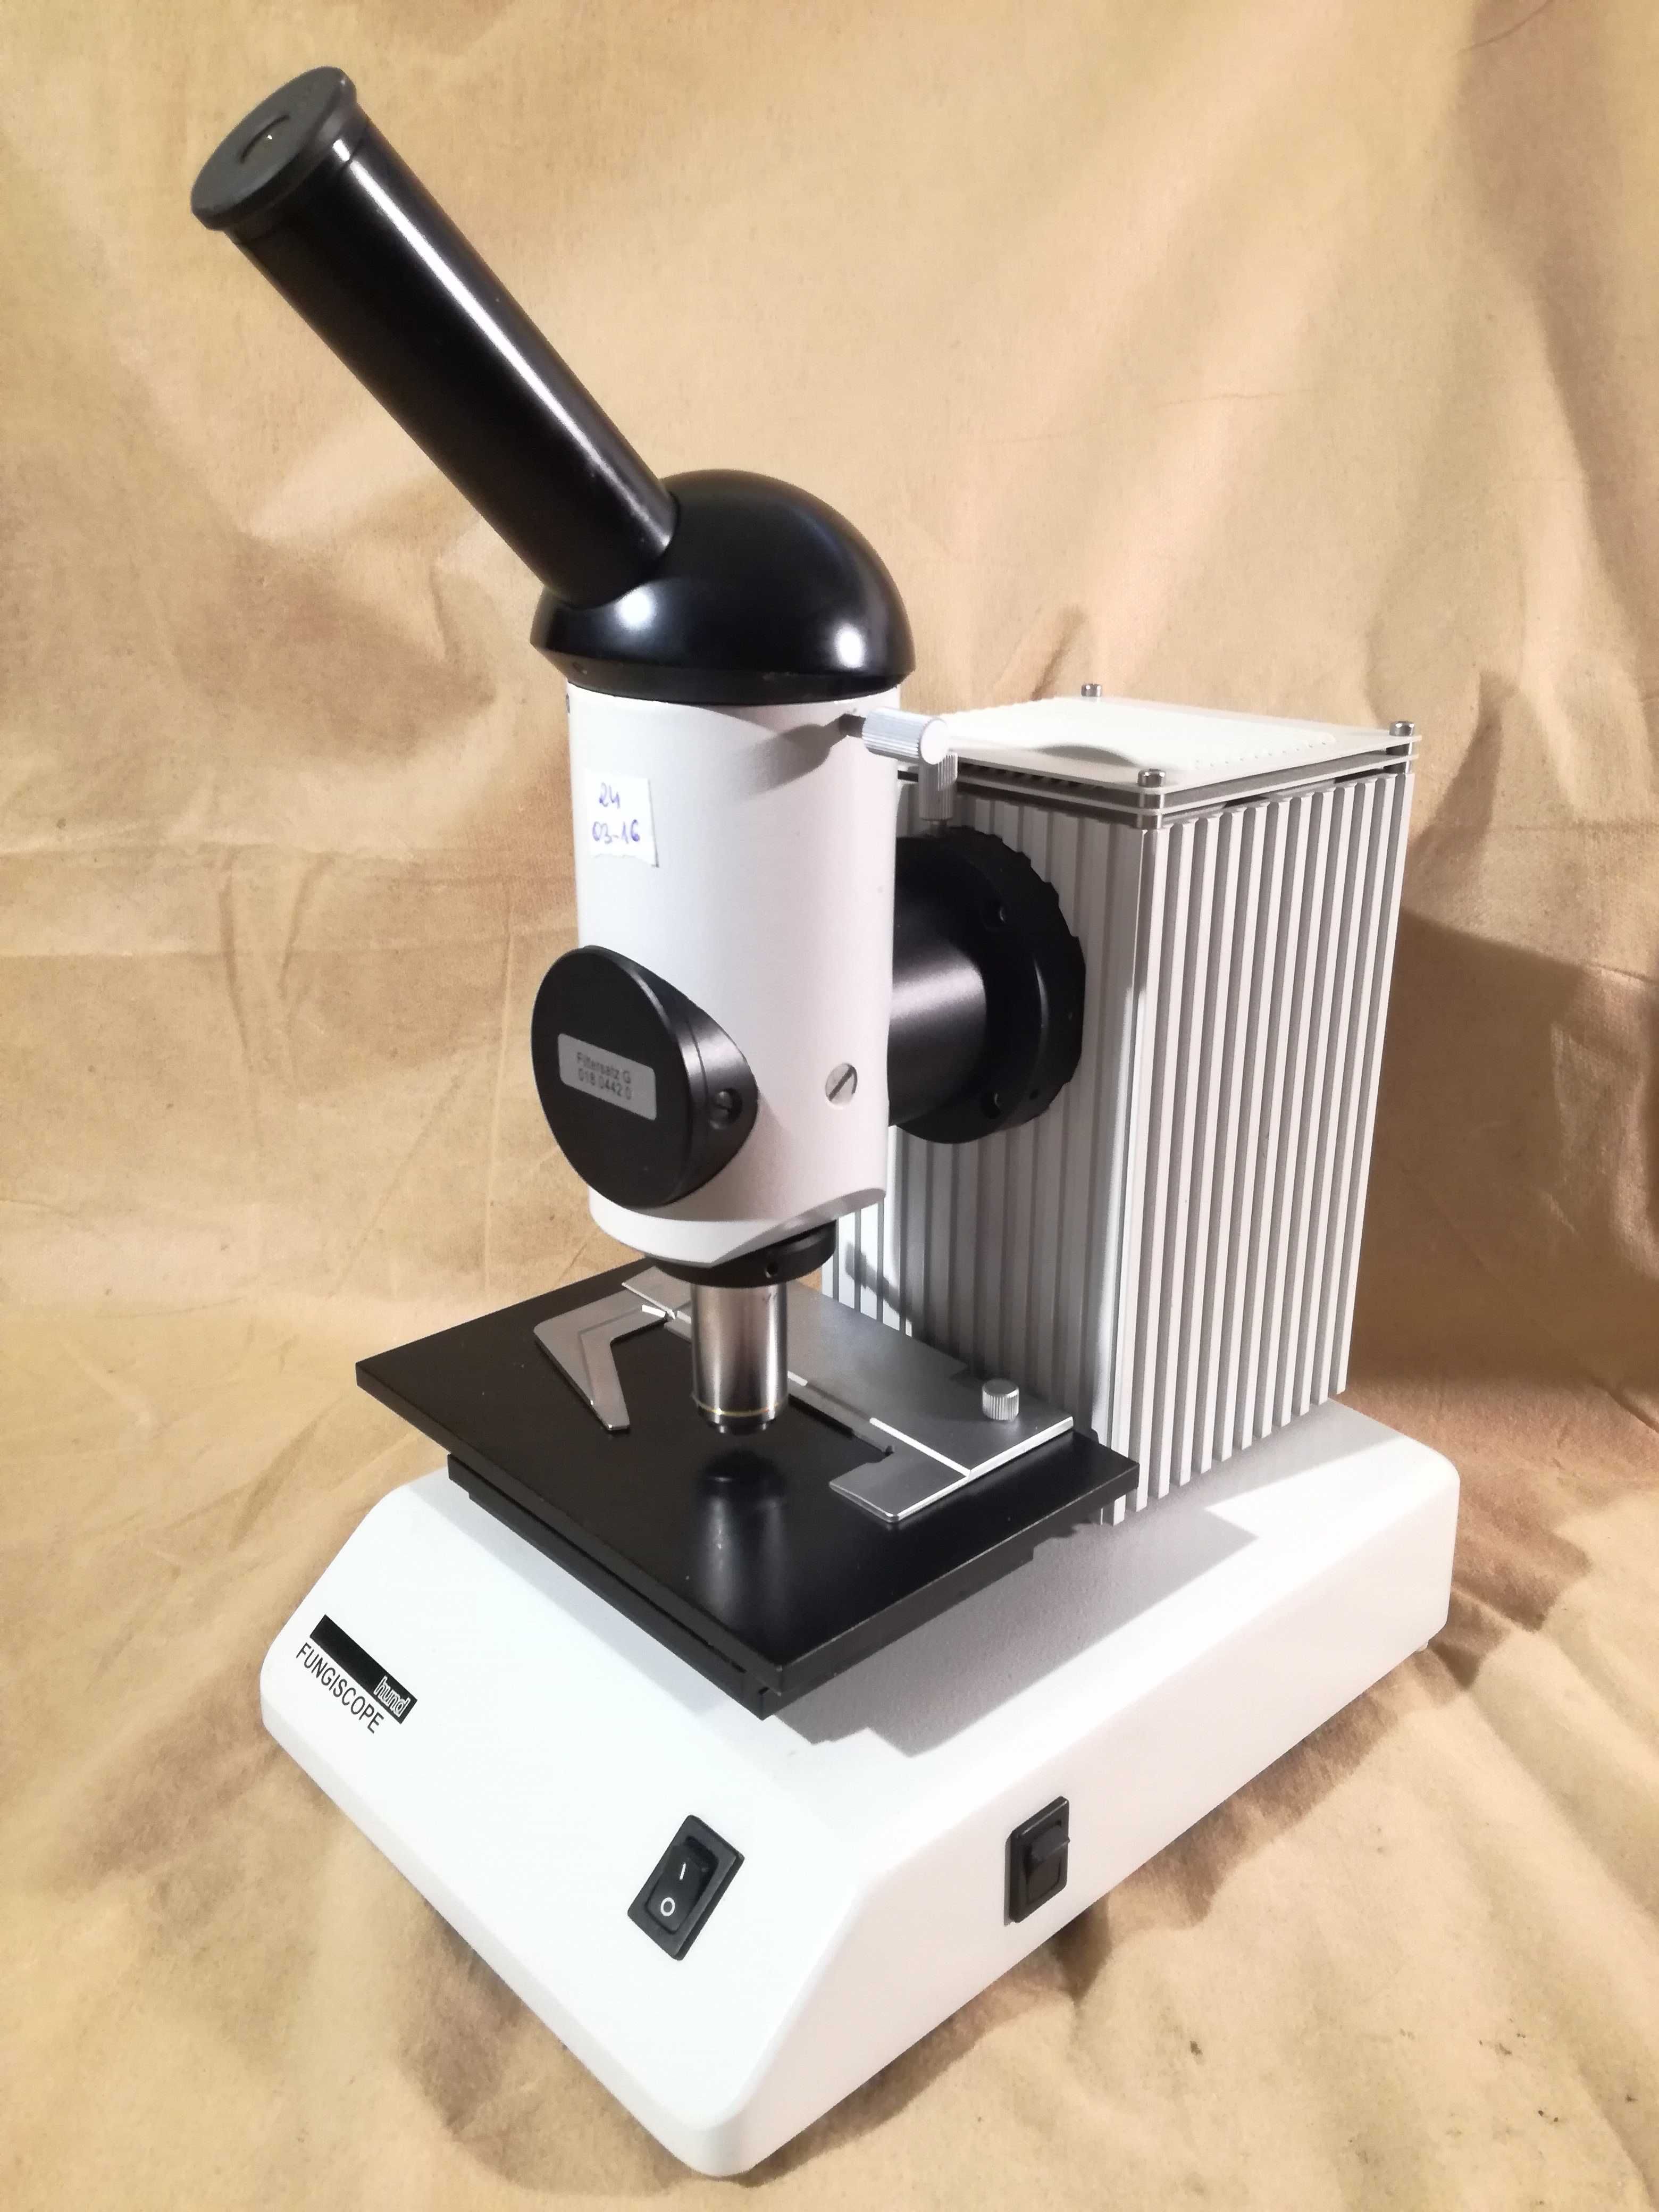 Hund Fungiscope Leica fluorescencja mikroskop grzyby pzo